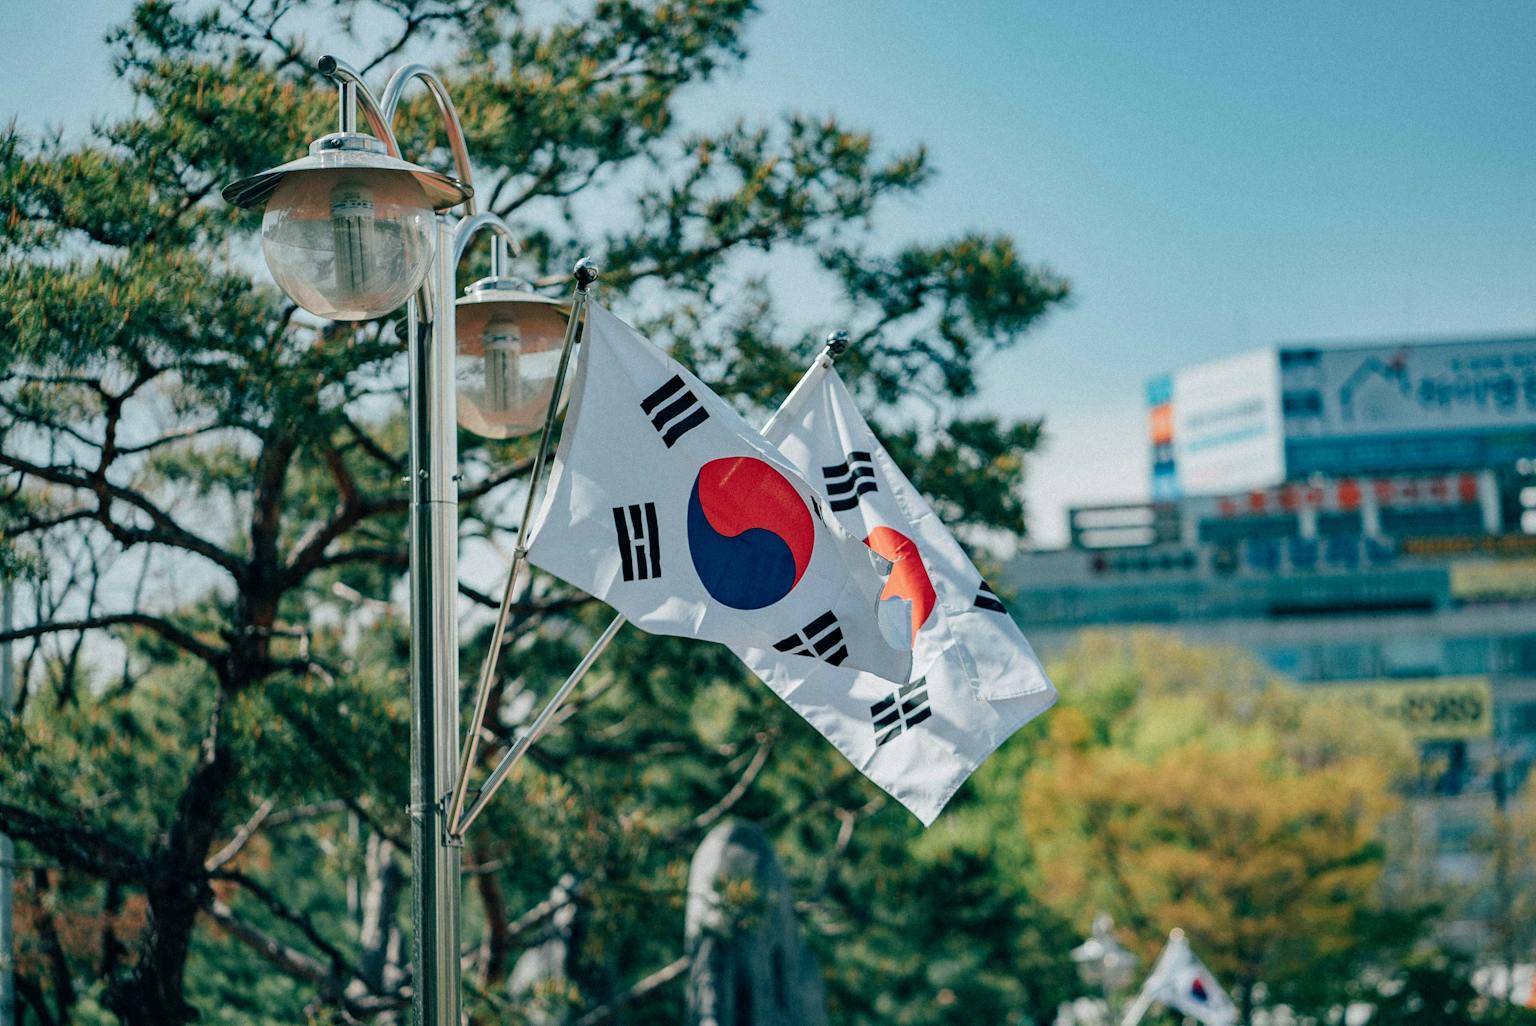 biaya hidup di korea selatan mahal